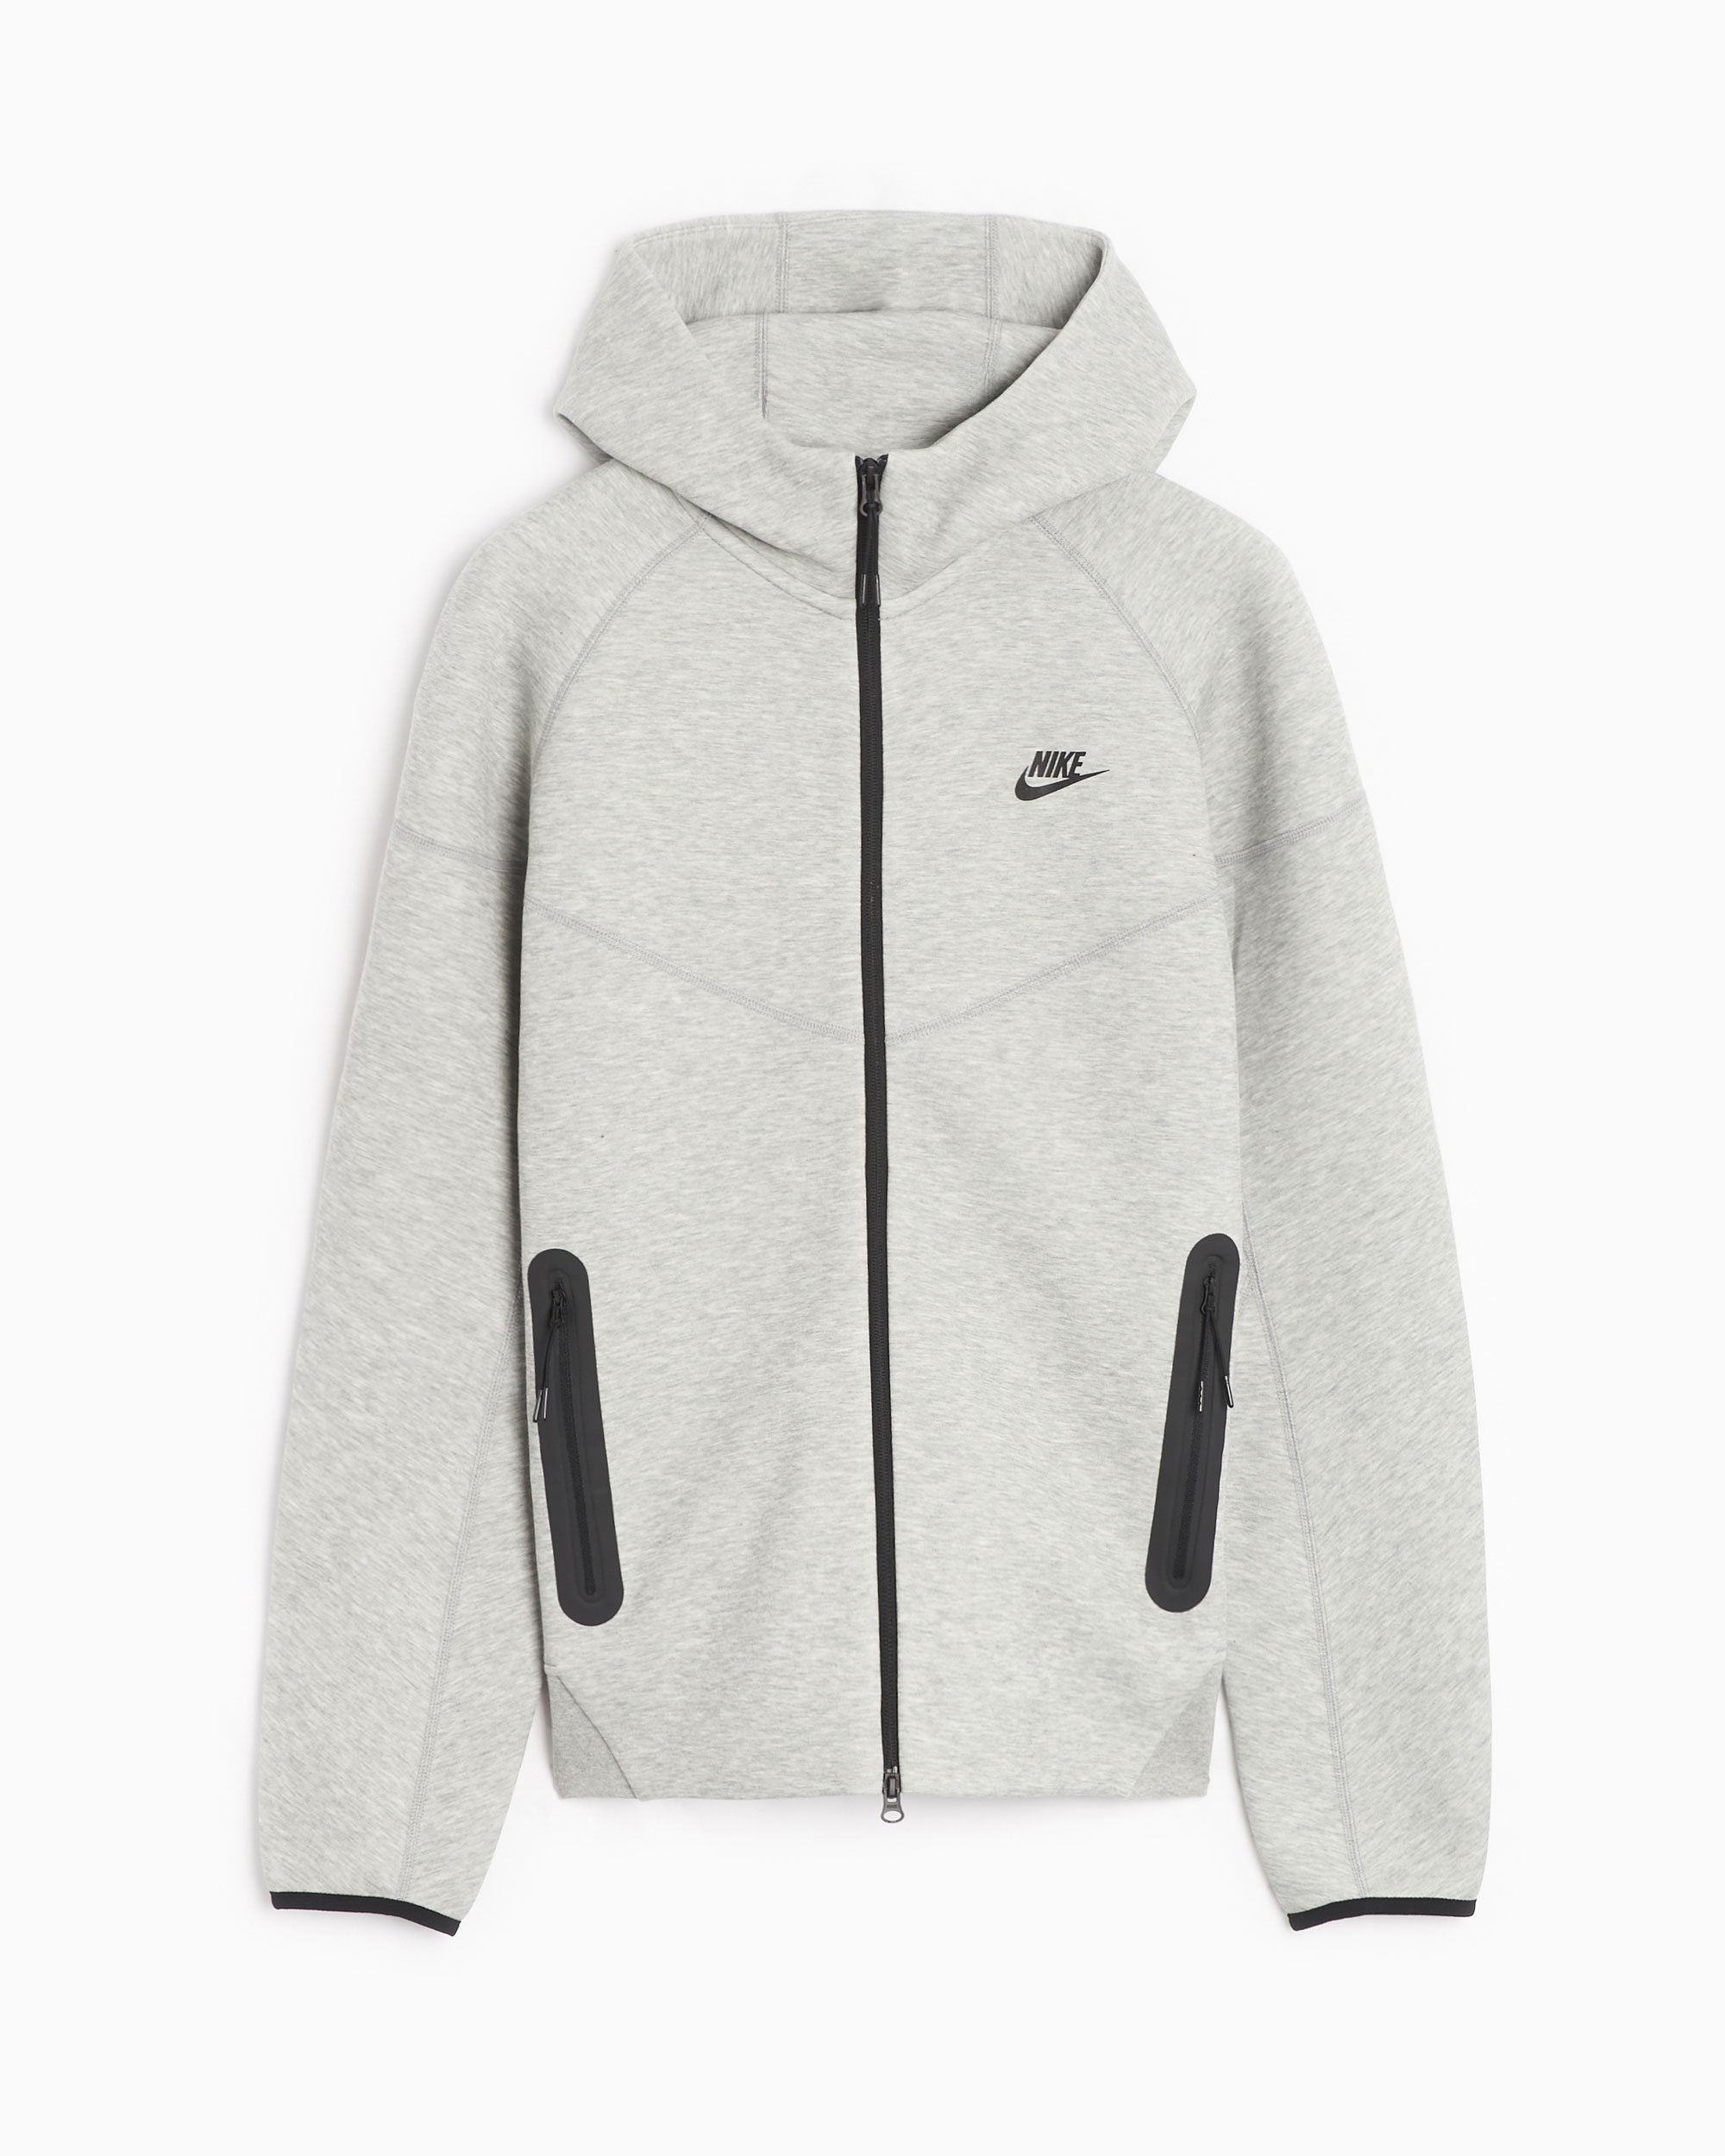 Nike Sportswear Tech Fleece Windrunner Men's Hooded Jacket Gray